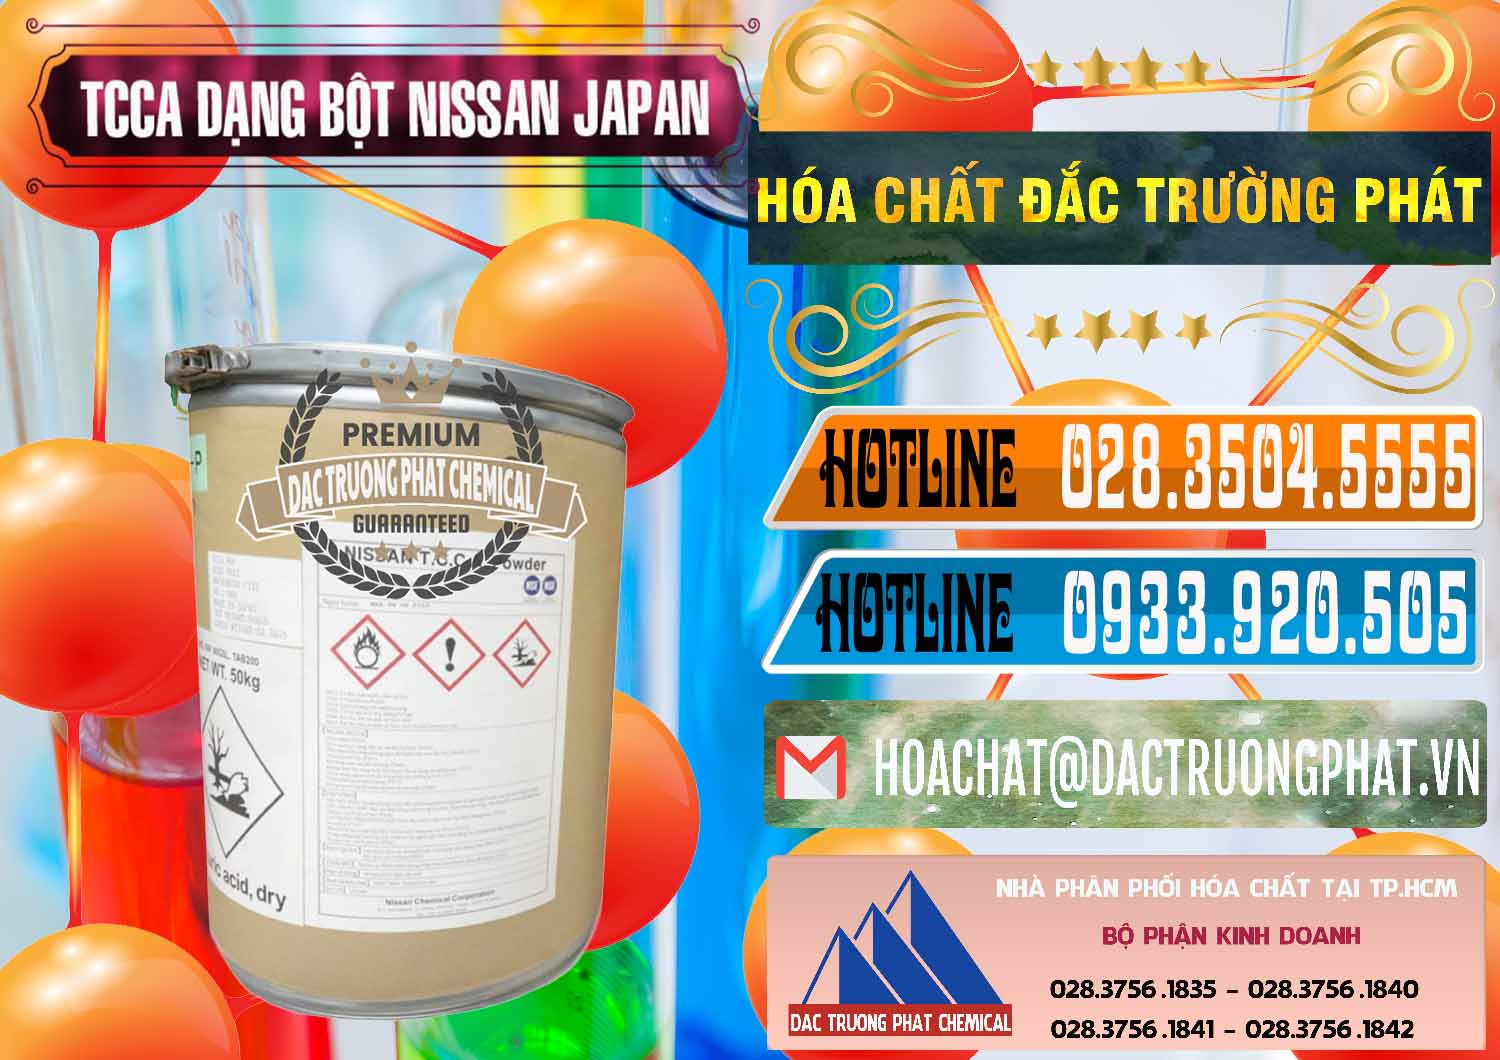 Nơi chuyên nhập khẩu và bán TCCA - Acid Trichloroisocyanuric 90% Dạng Bột Nissan Nhật Bản Japan - 0375 - Công ty phân phối & bán hóa chất tại TP.HCM - stmp.net